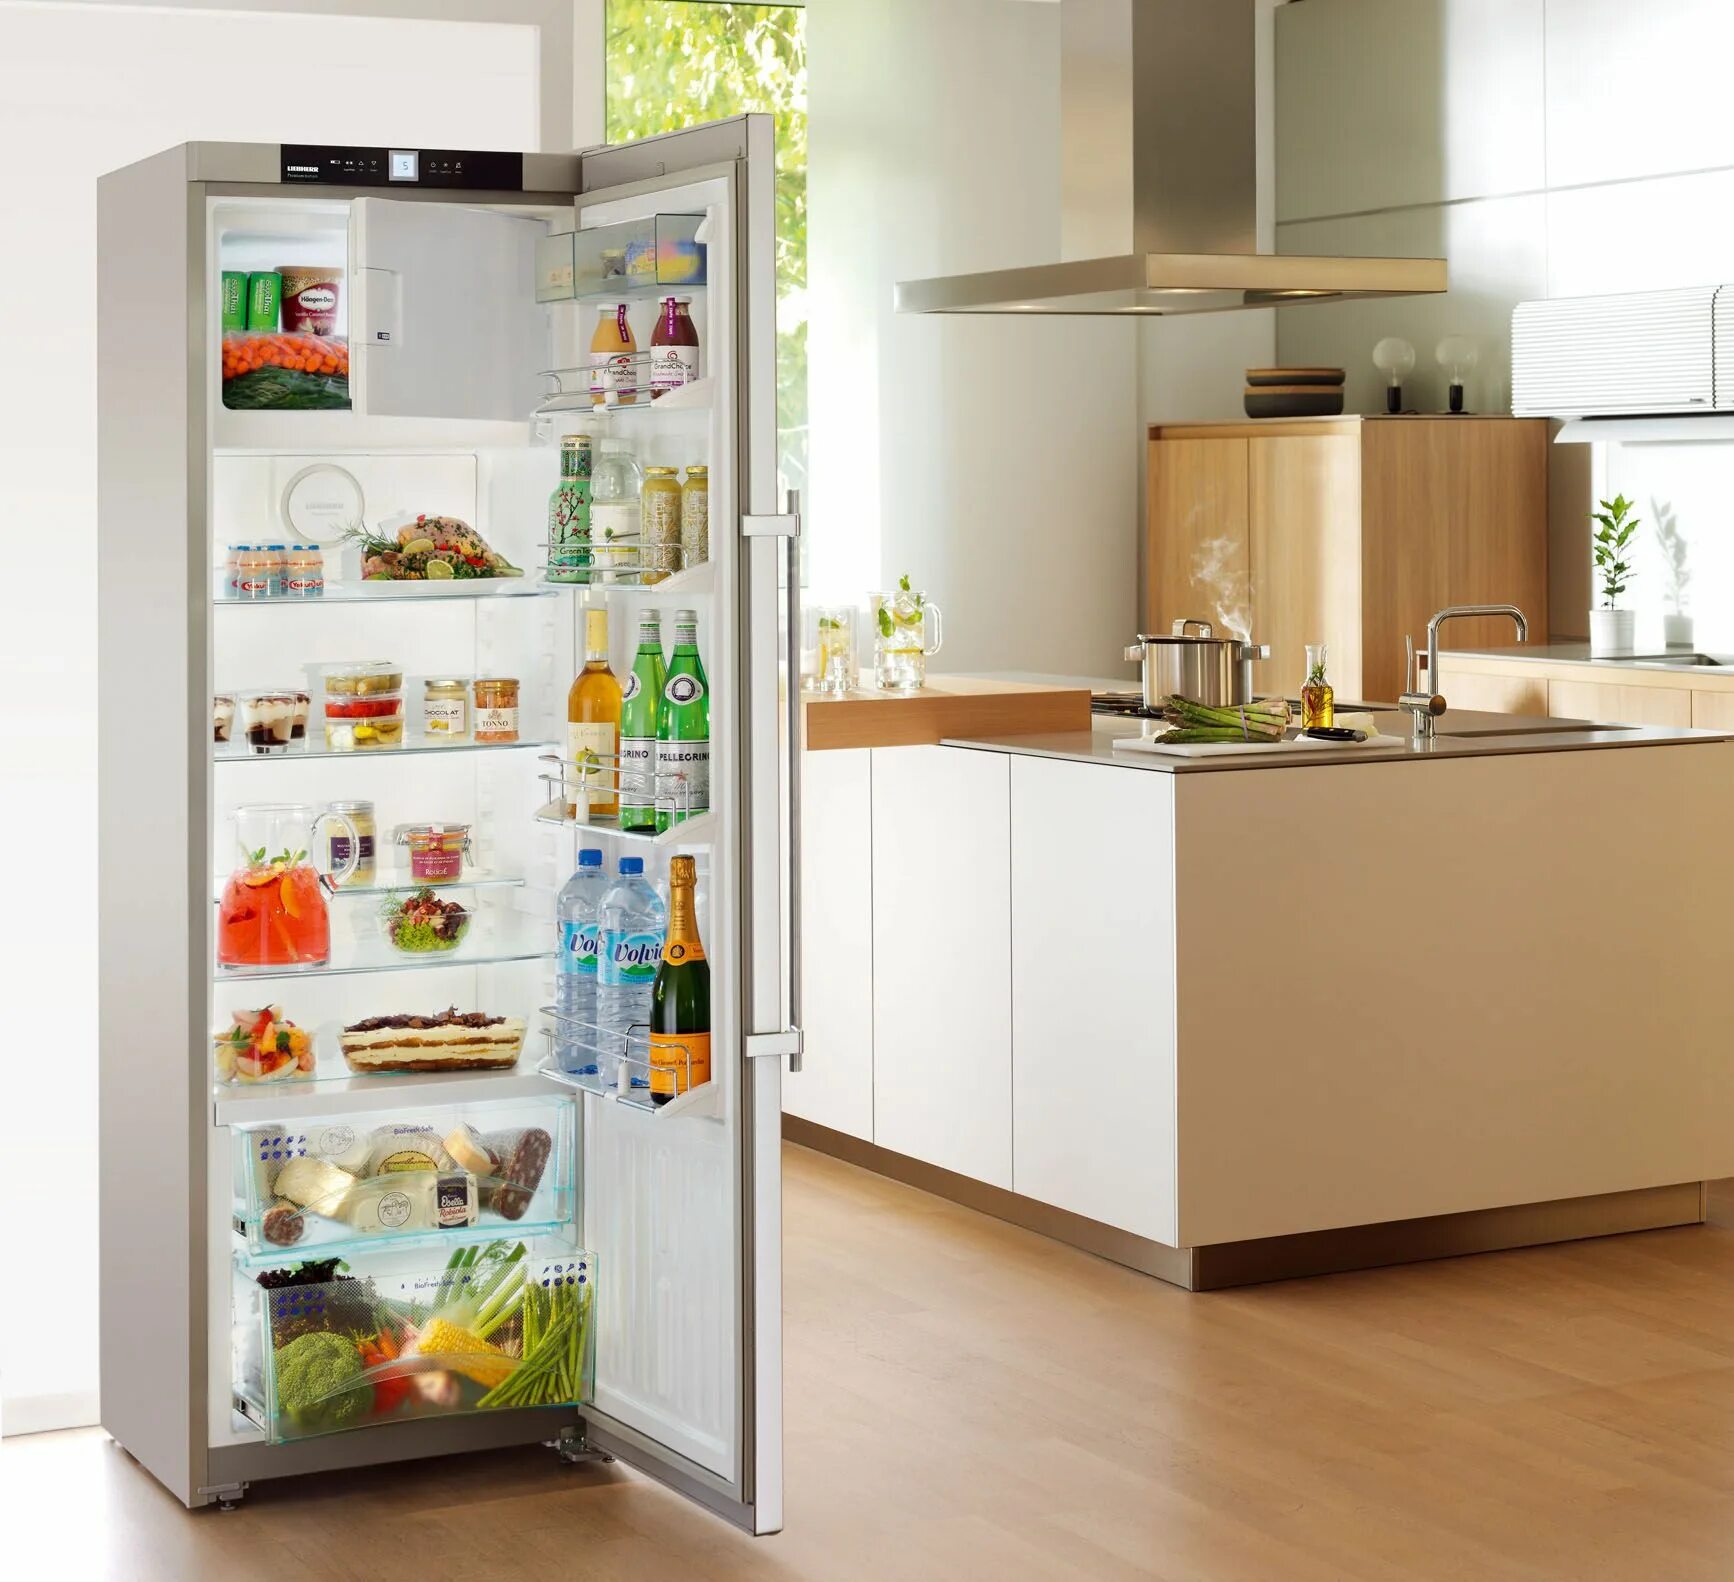 Холодильник это. Холодильник. Хороший холодильник. Холодильник качественный и недорогой. Холодильник дома.